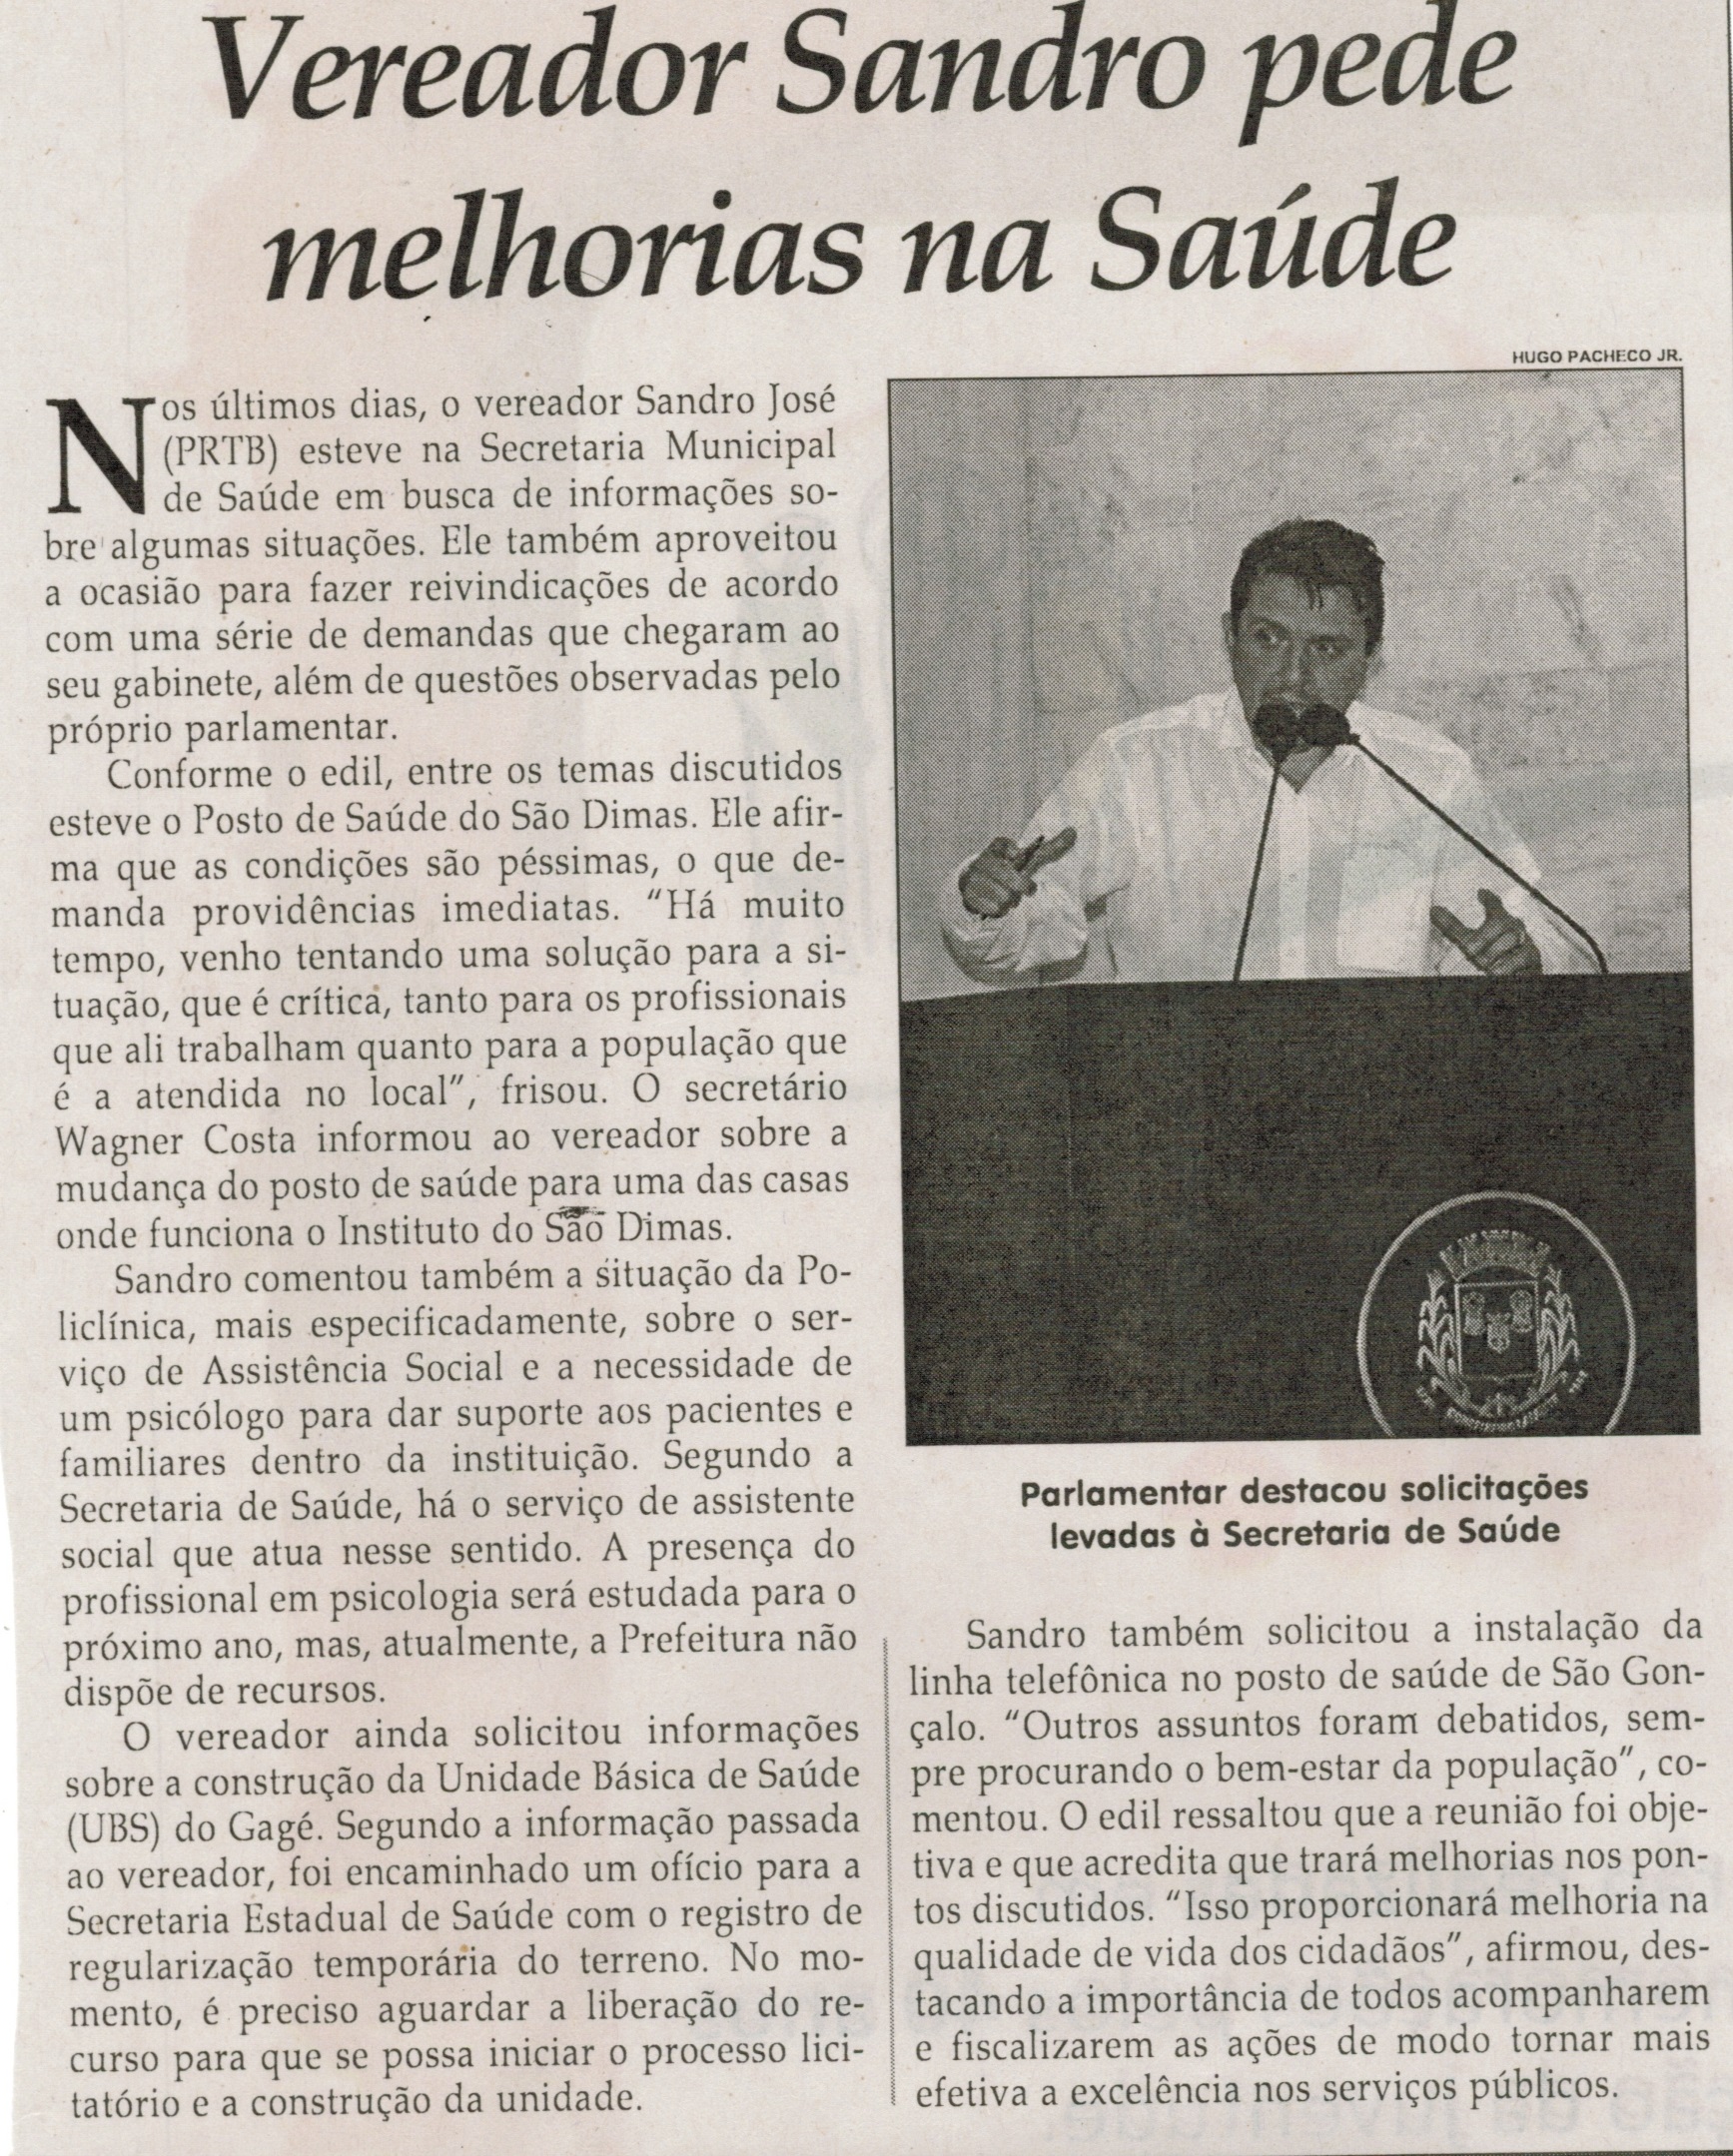  Vereador Sandro pede melhorias na Saúde. Jornal Correio da Cidade, Conselheiro Lafaiete, 12 dez. 2014, p. 1.